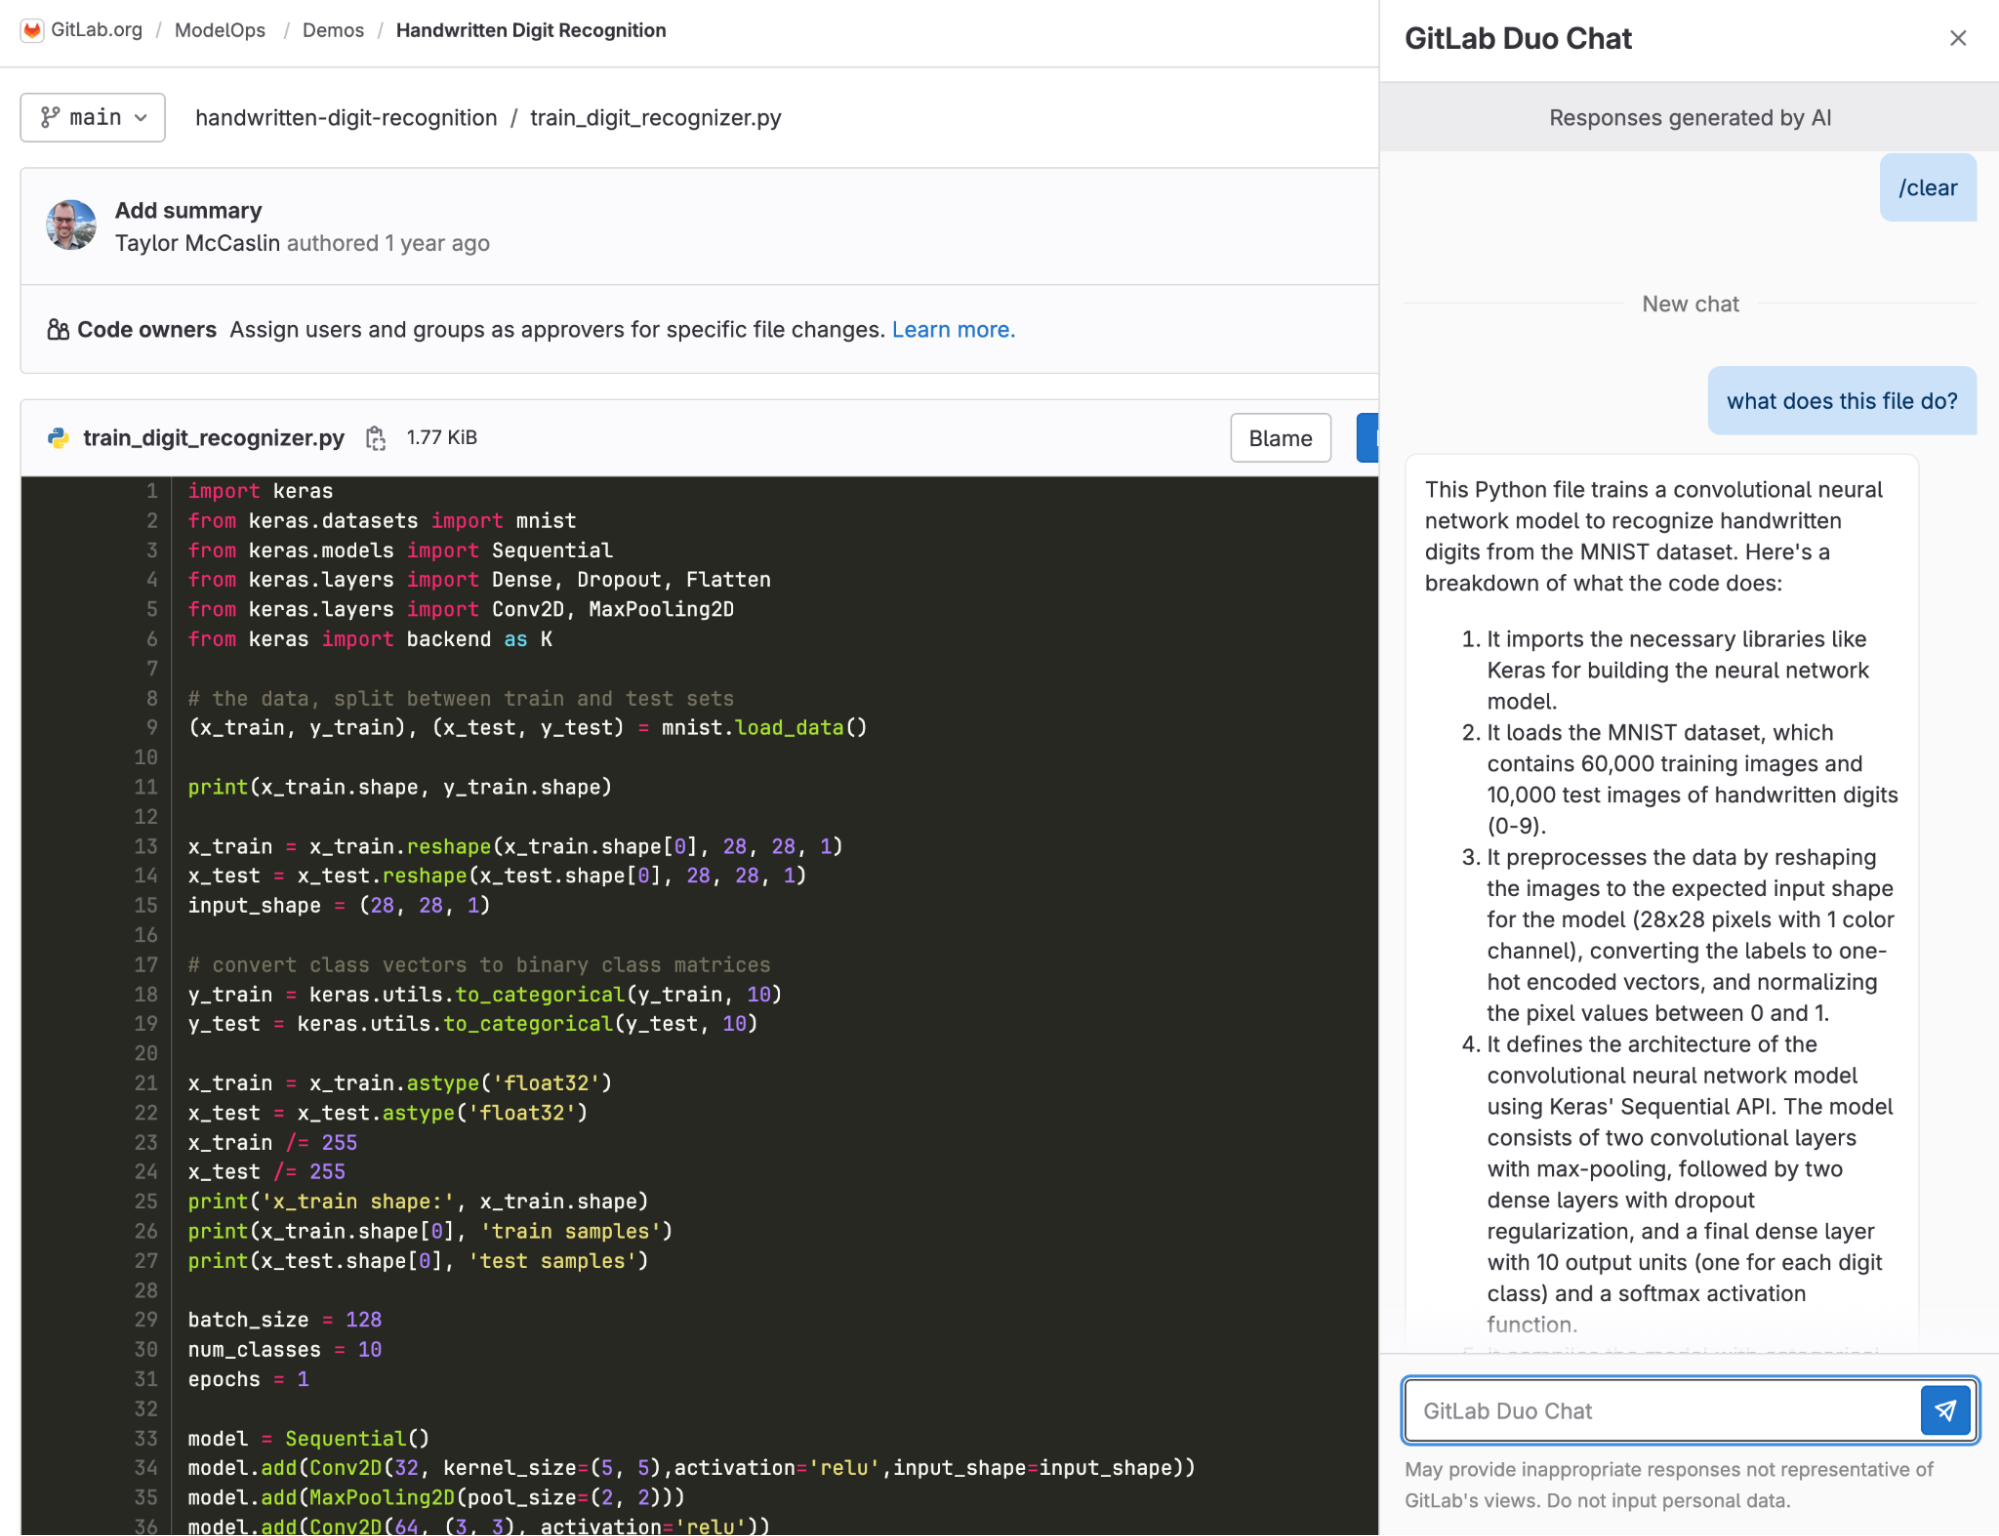 Screenshot of GitLab Duo Chat window